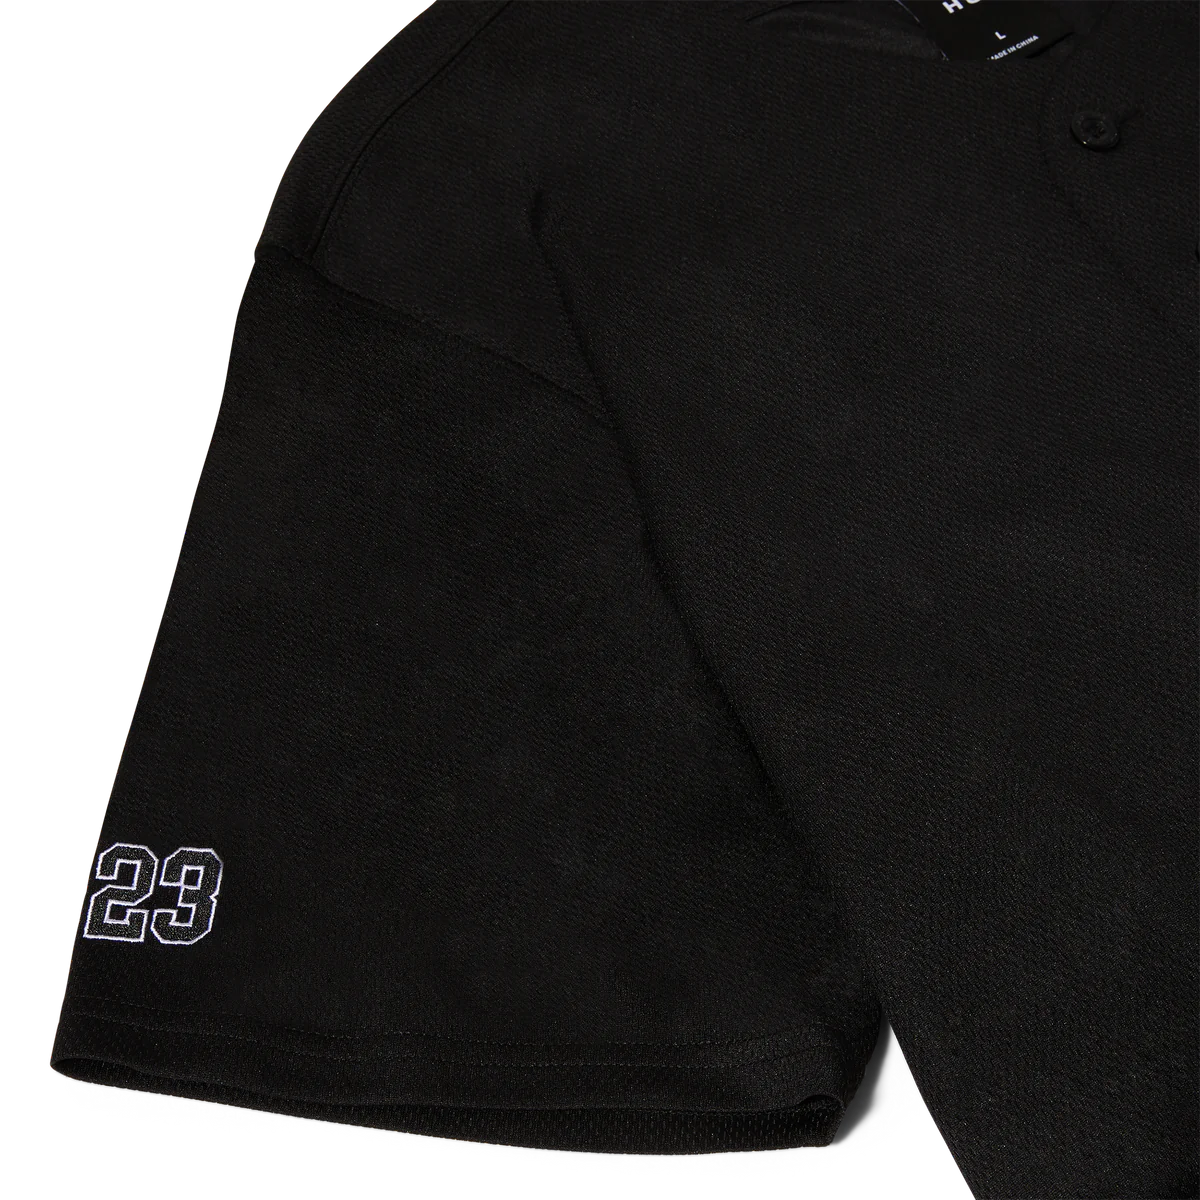 H-star Baseball Shirt (Black)